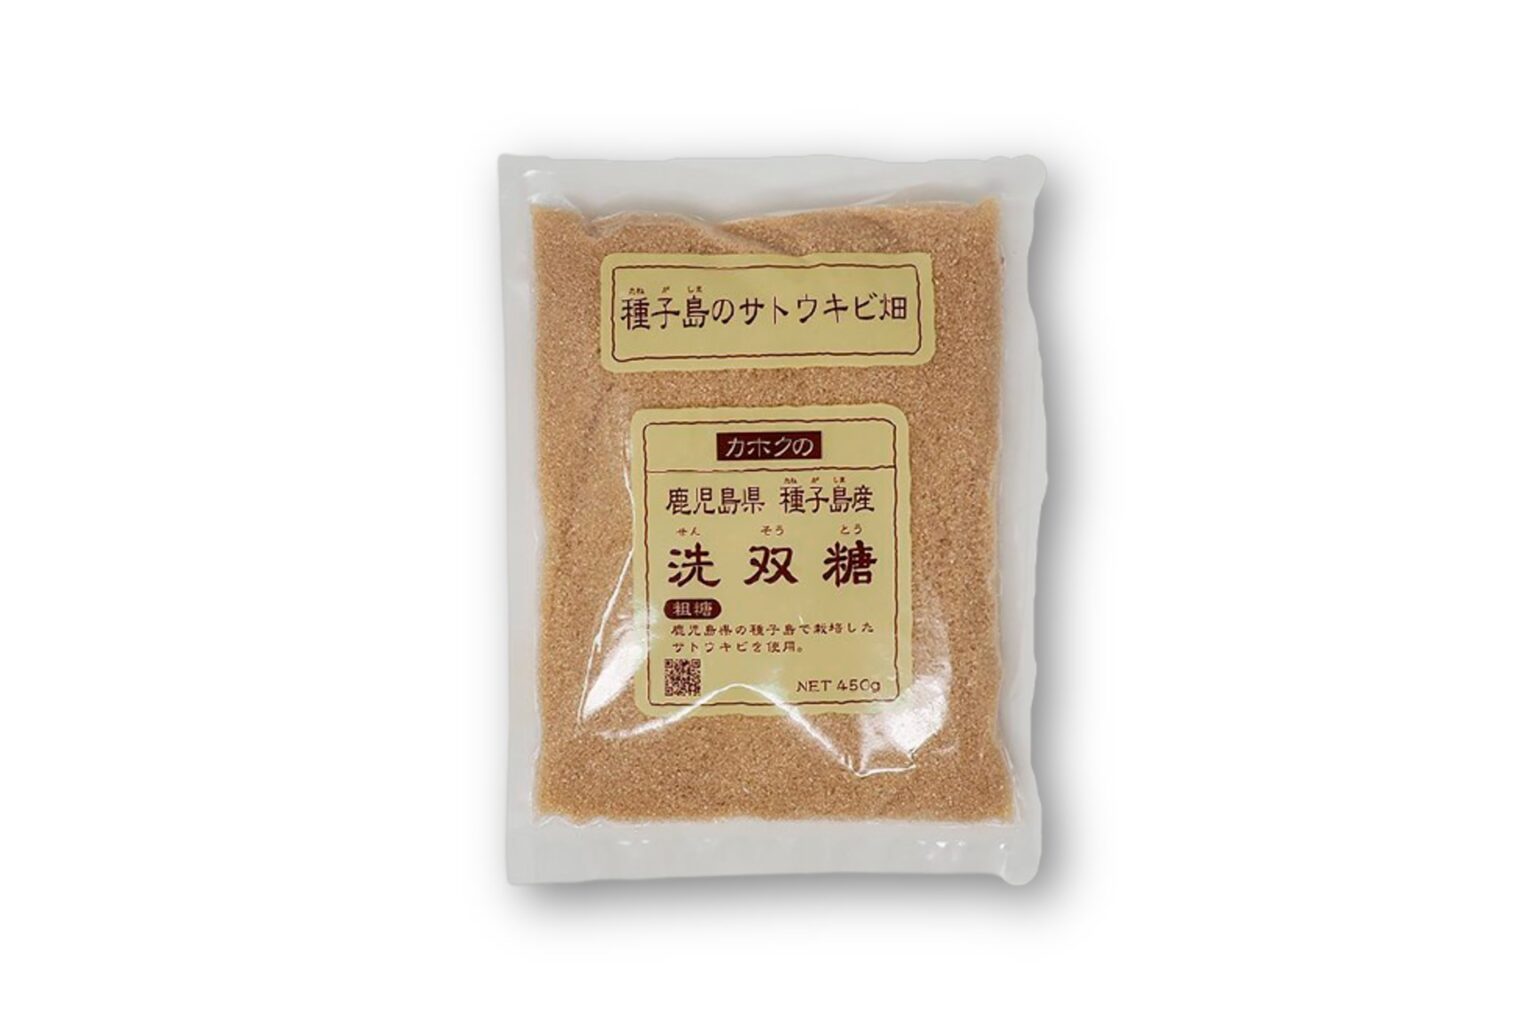 種子島産のサトウキビで作った「洗双糖」450g 378円。カルシウムや鉄分がいっぱい。（鹿北製油 
 http://shop.kahokuseiyu.co.jp/）